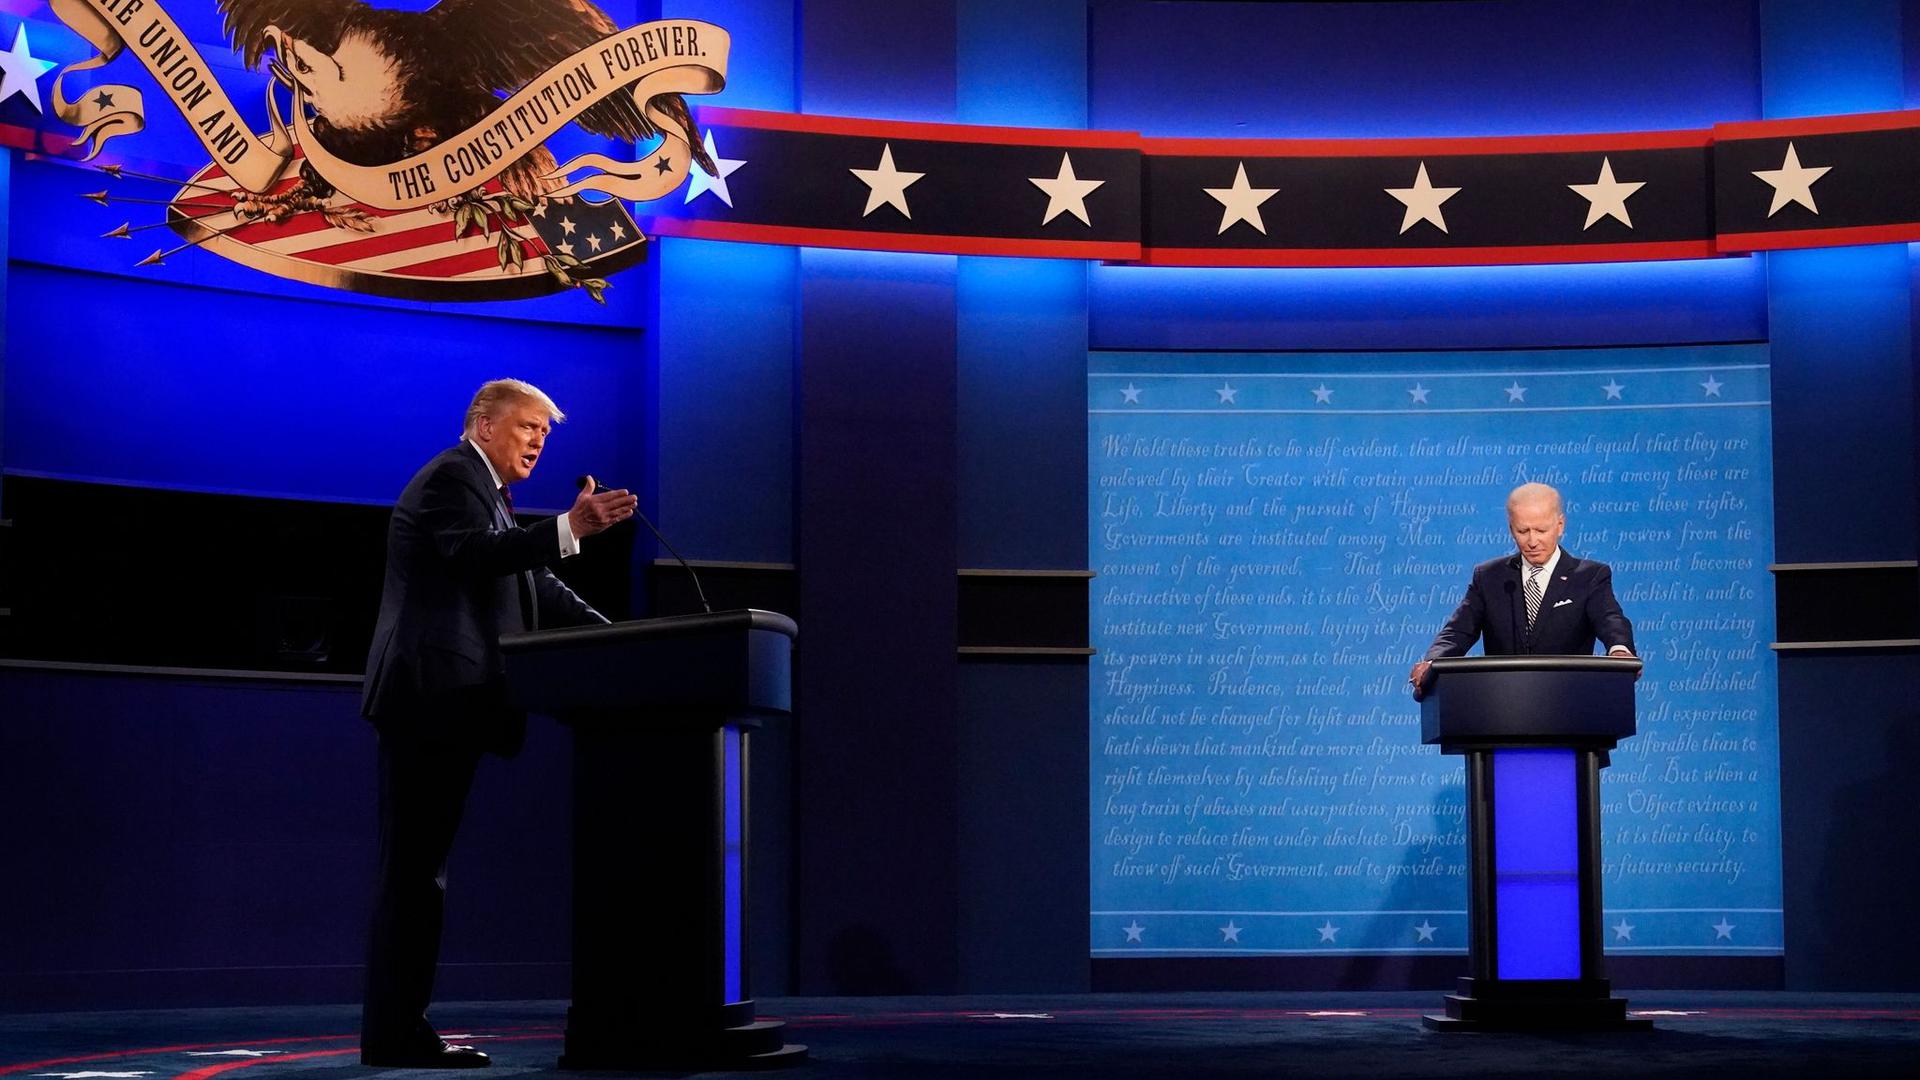 Fünf Wochen vor der Präsidentschaftswahl kam es in den USA zur mit Spannung erwarteten ersten TV-Debatte zwischen Amtsinhaber Trump und seinem Herausforderer Biden.